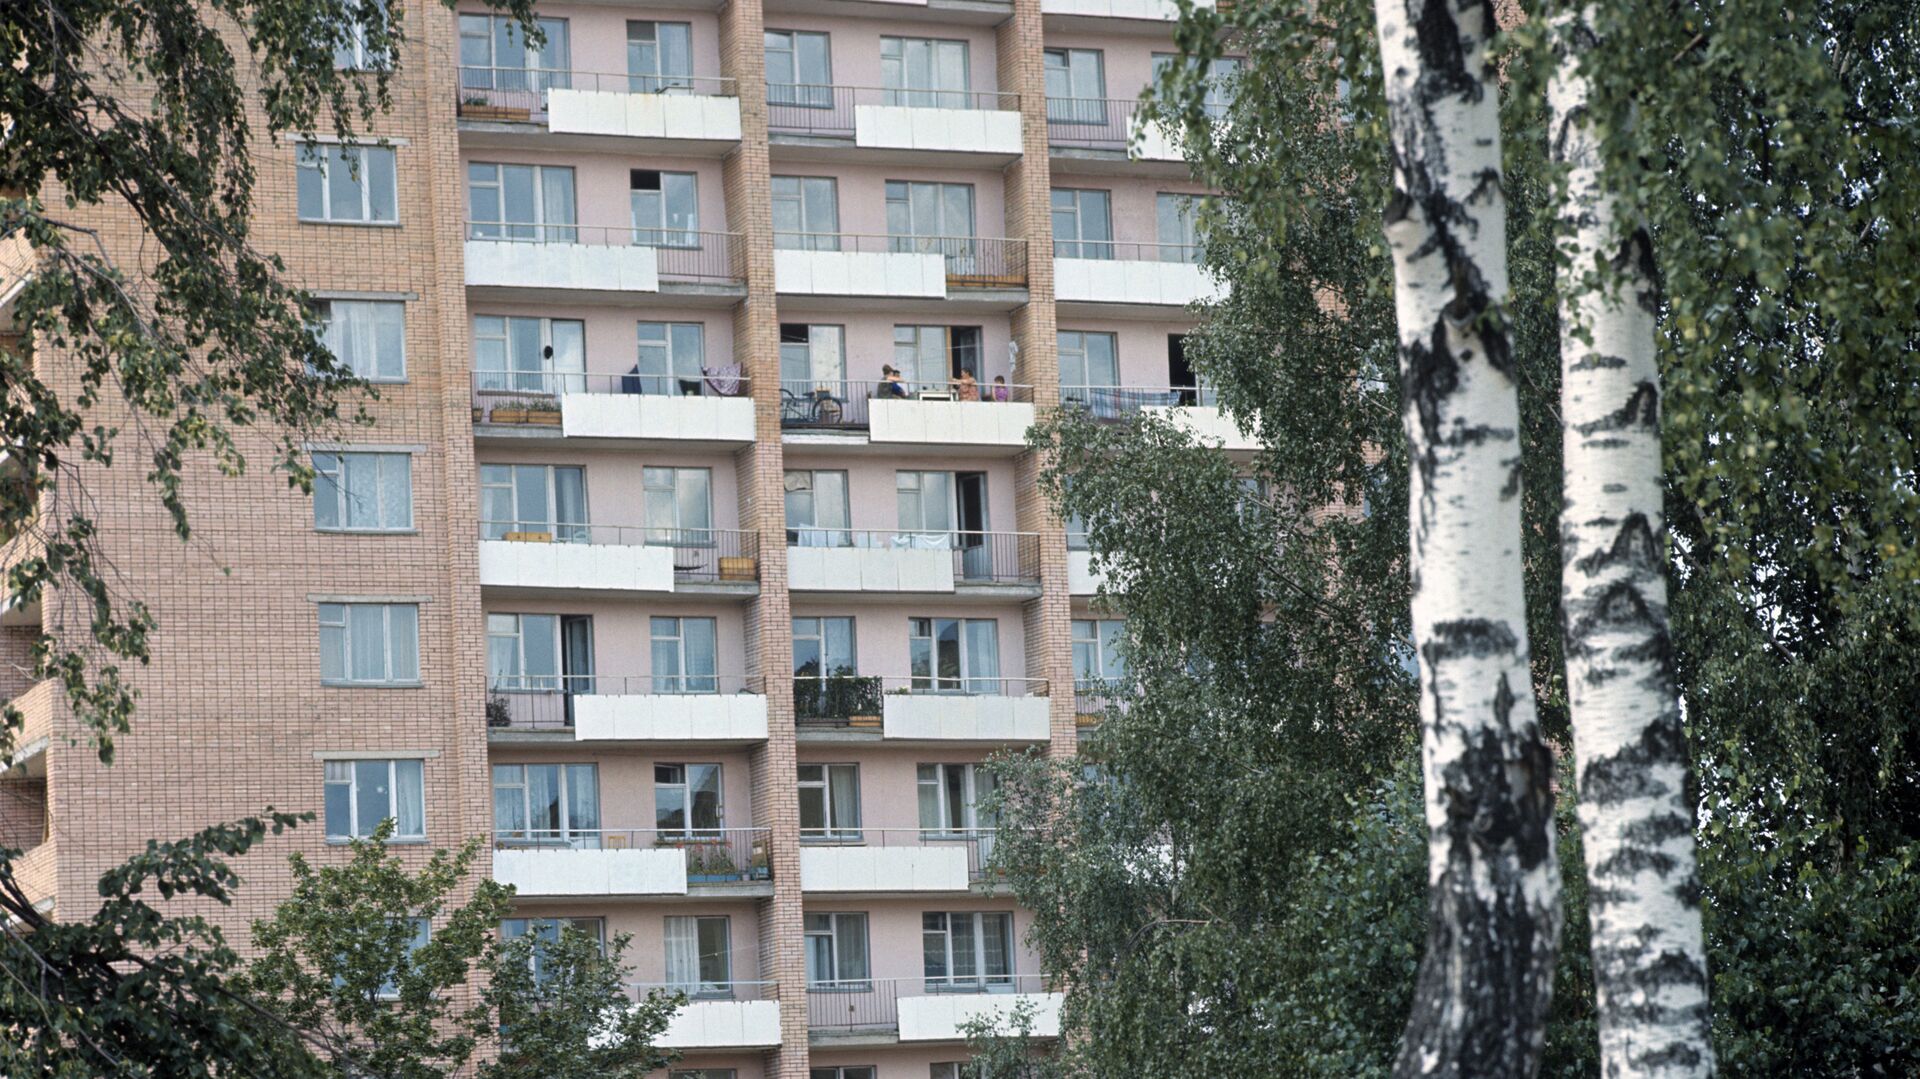 Балконы многоквартирного здания - РИА Новости, 1920, 21.10.2020